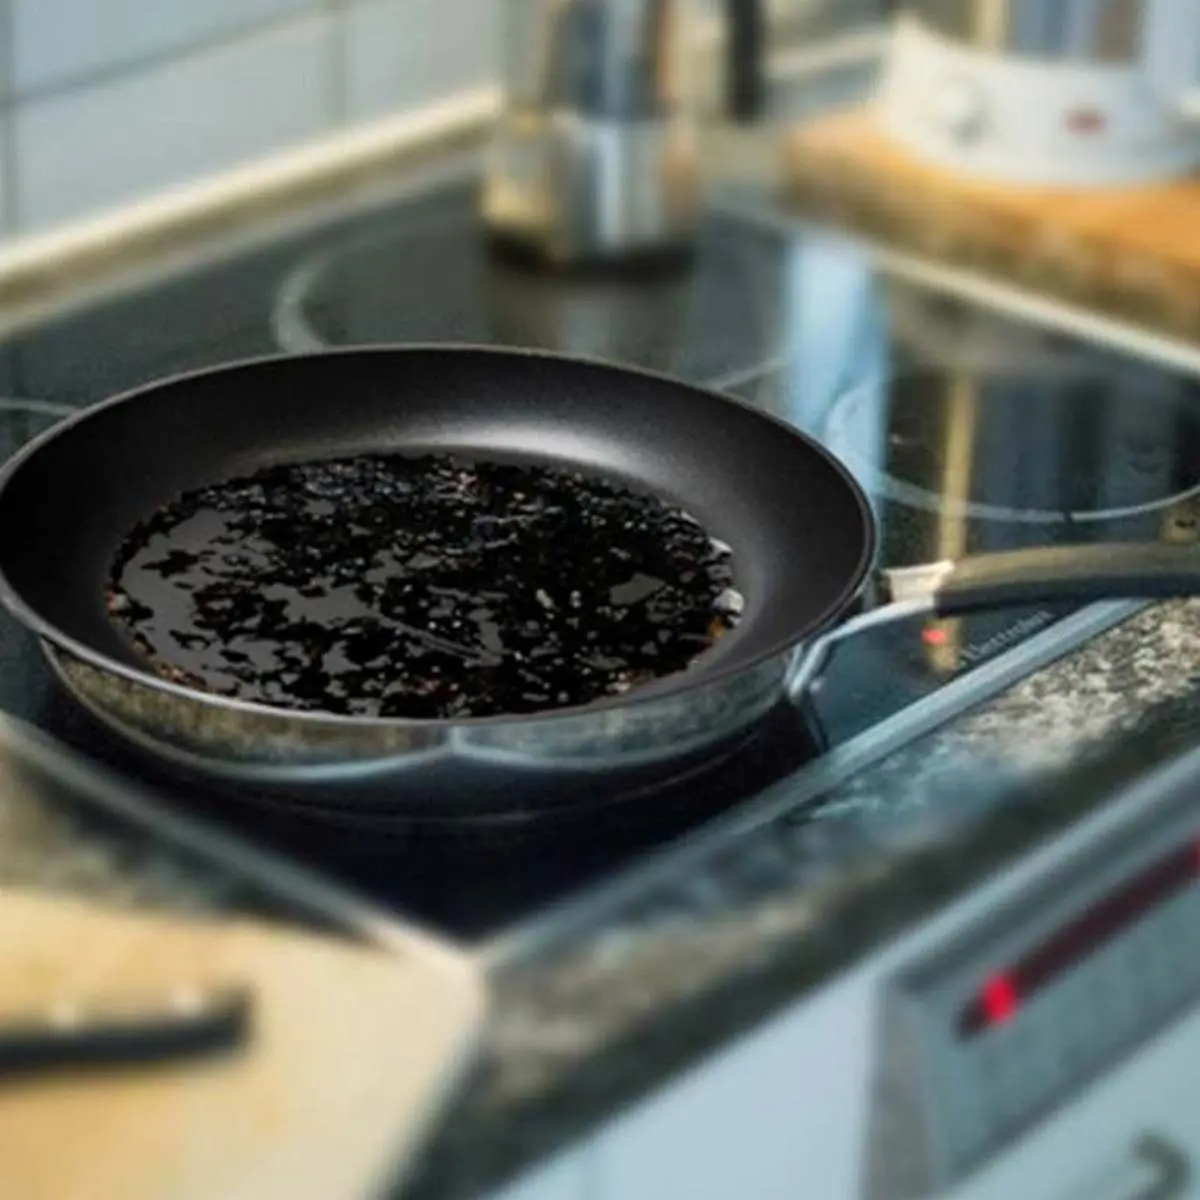 چطور غذای سوخته را از کف قابلمه یا ماهیتابه پاک کنیم؟